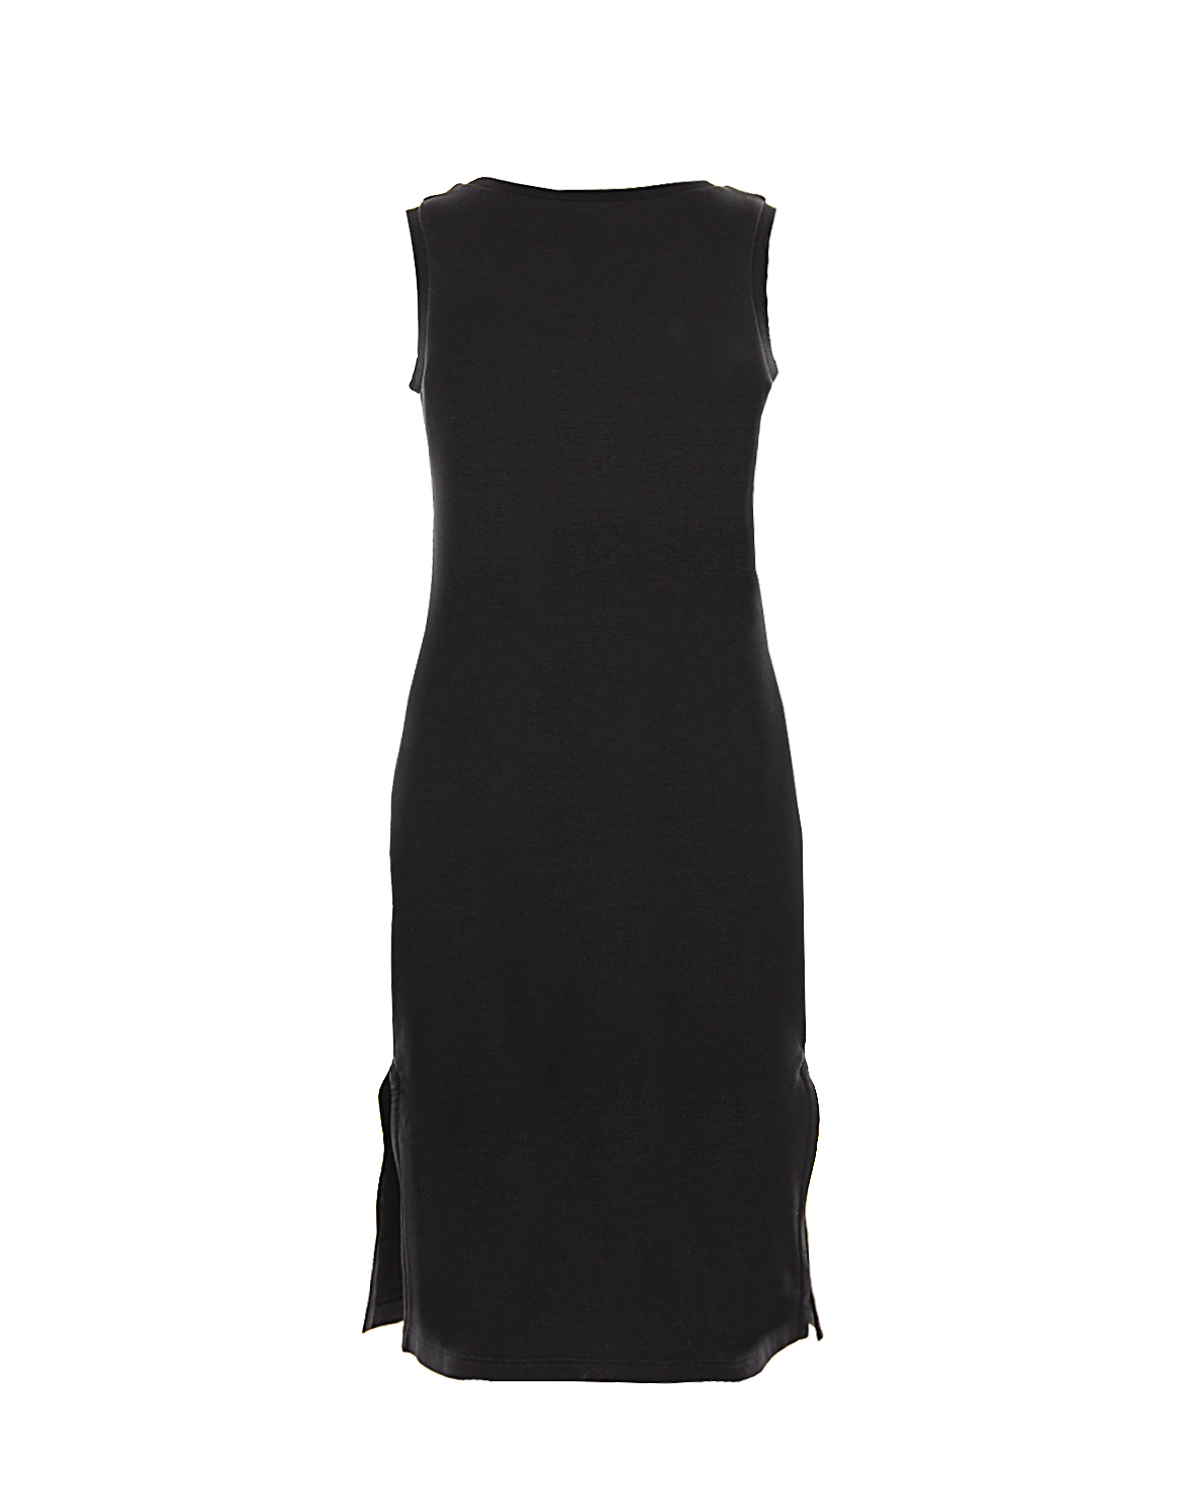 Платье без рукавов с декоративными вставками Givenchy детское, размер 140, цвет черный - фото 2